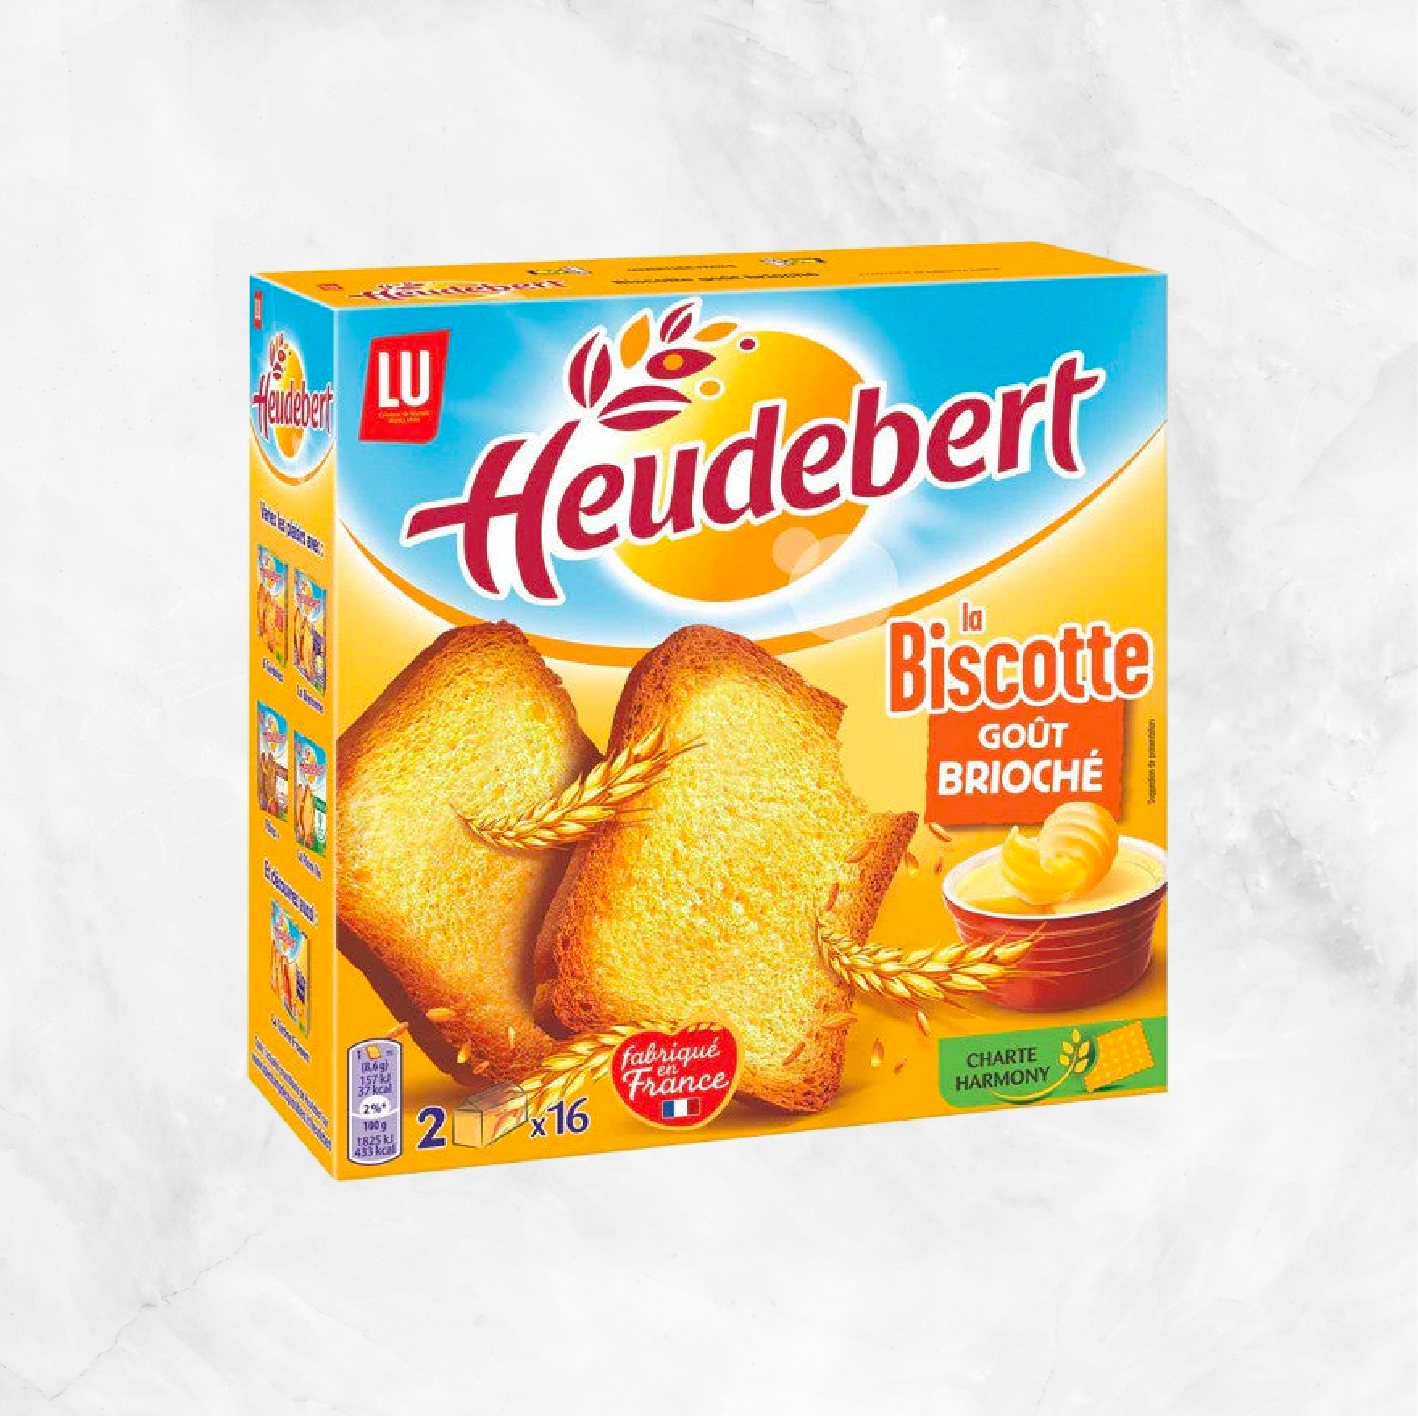 Heudebert Biscottes Brioche